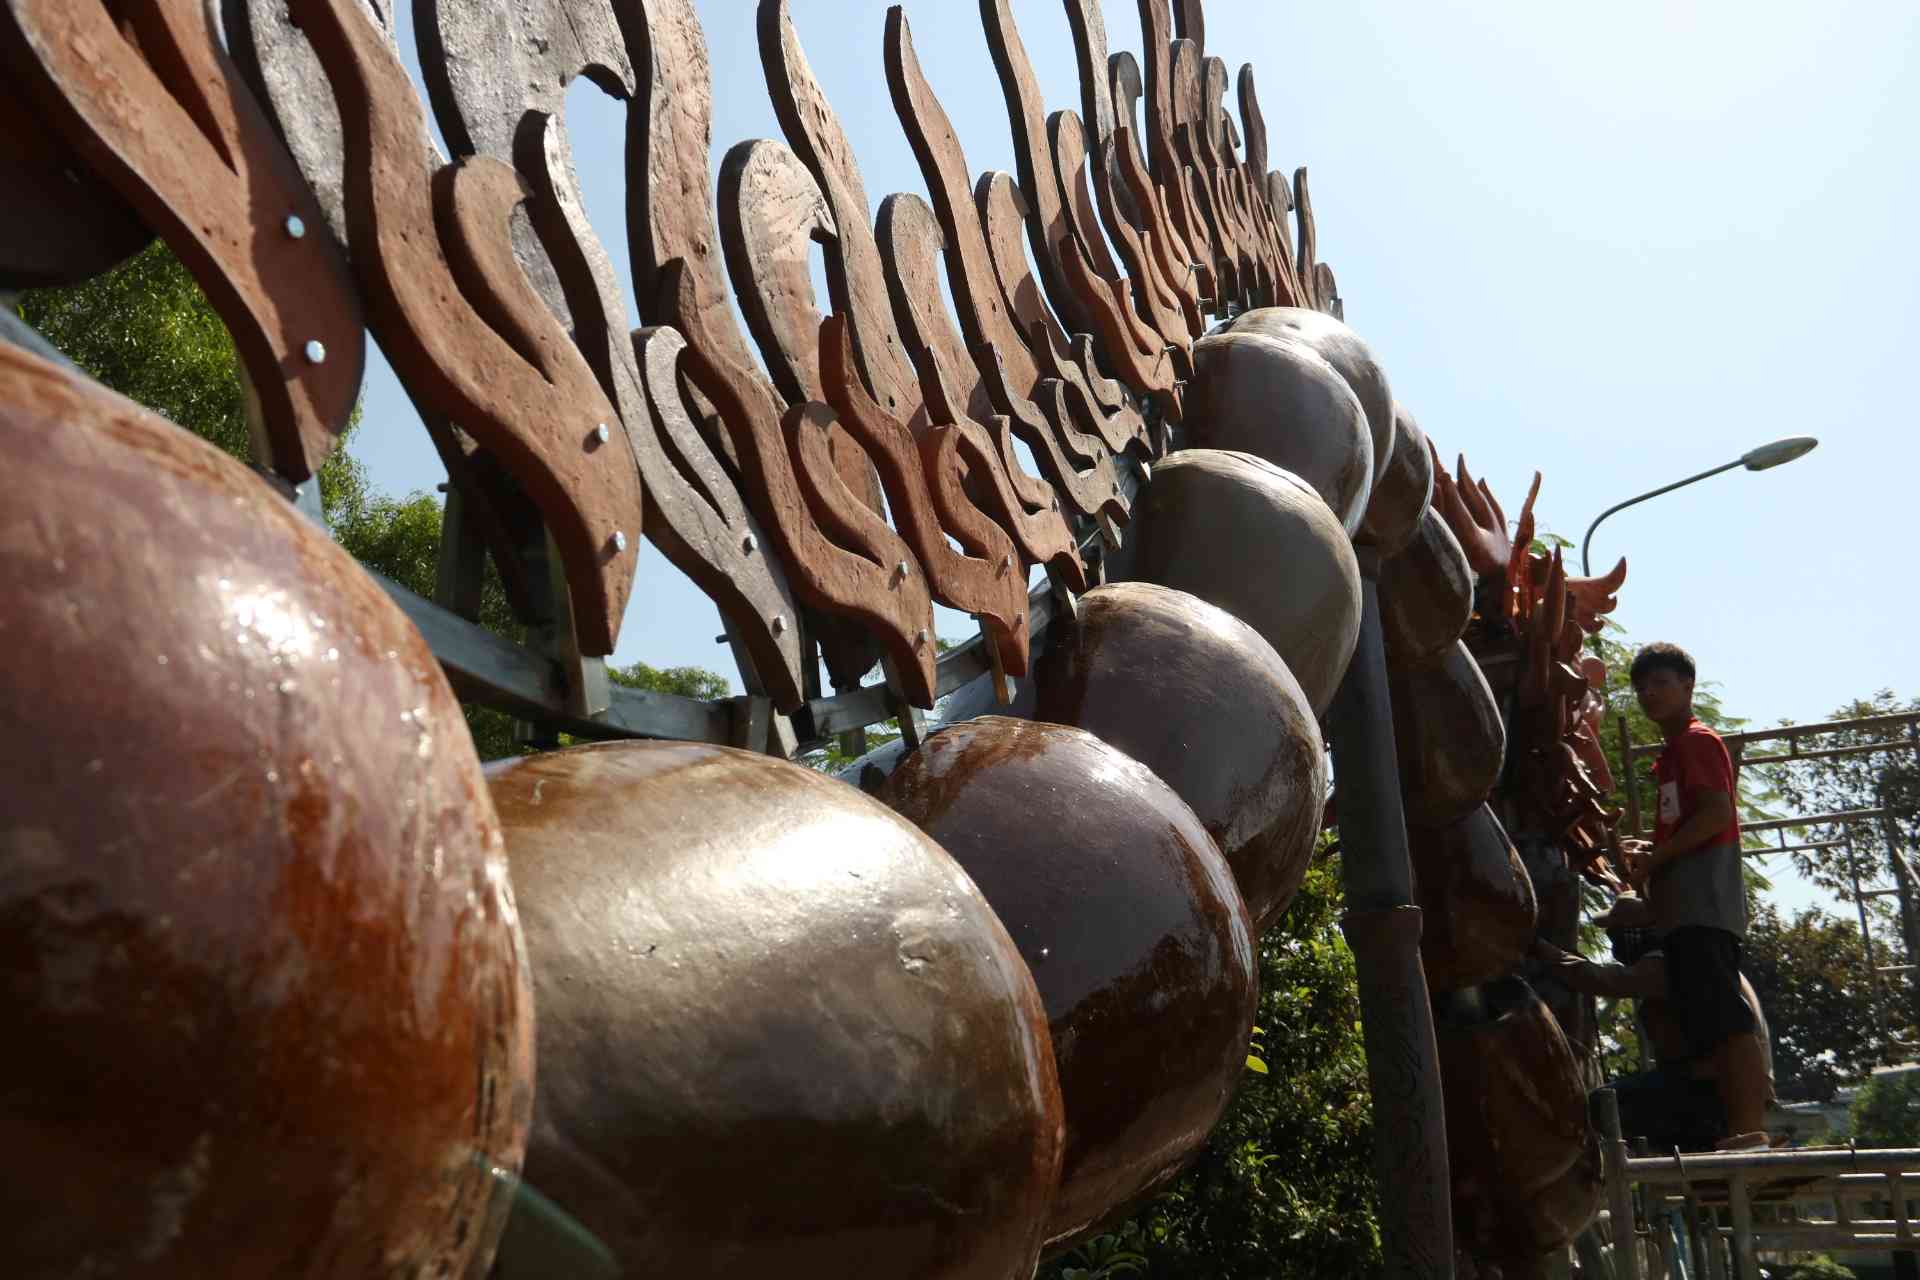 Những vật tư là đồ gốm để chế tác rồng được Lò lu Đại Hưng - lò gốm có tuổi đời gần 180 năm ở phường Tương Bình Hiệp tài trợ. 